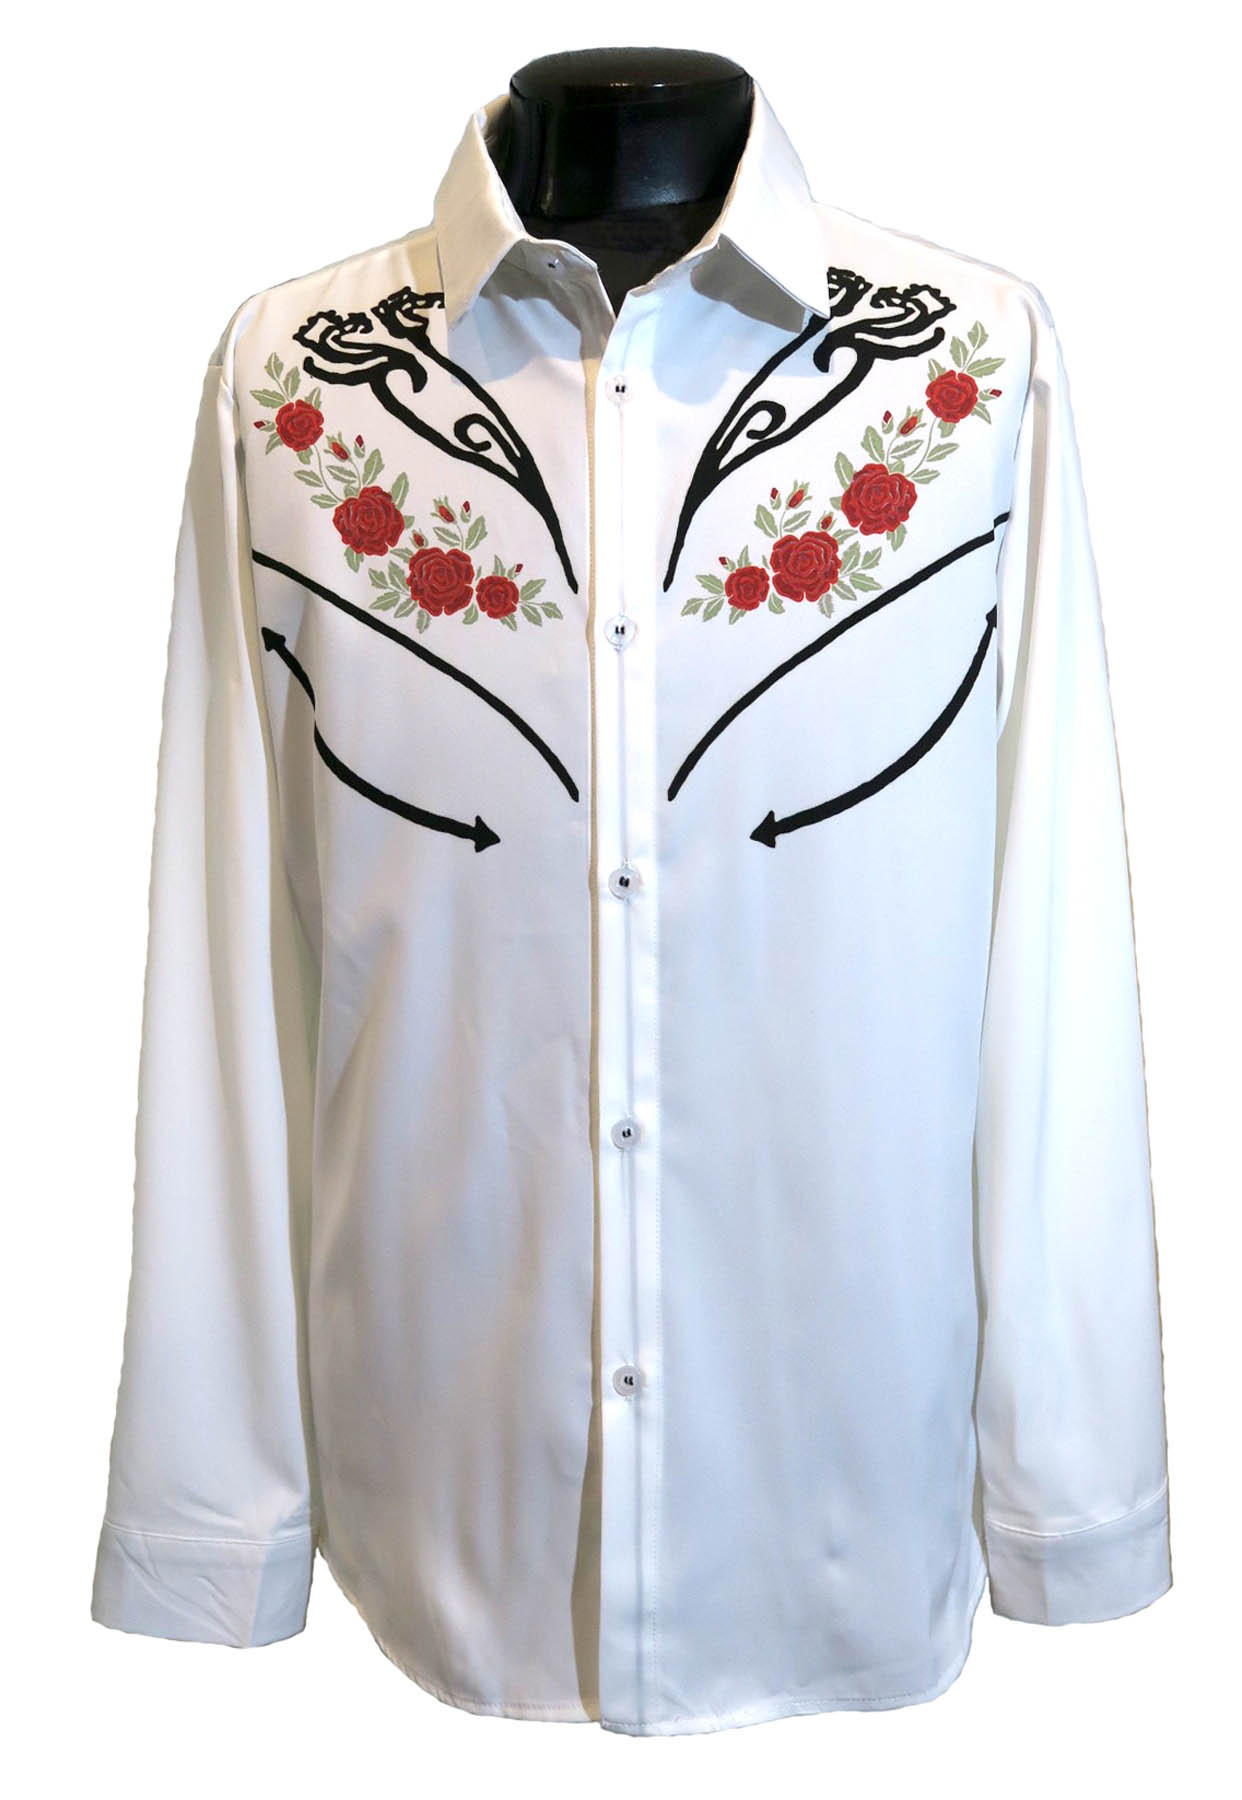 ウエスタンシャツ 白 薔薇 ホワイト メンズ バラ柄 ロカビリー カウボーイ ロック モード ヴィジュアル系